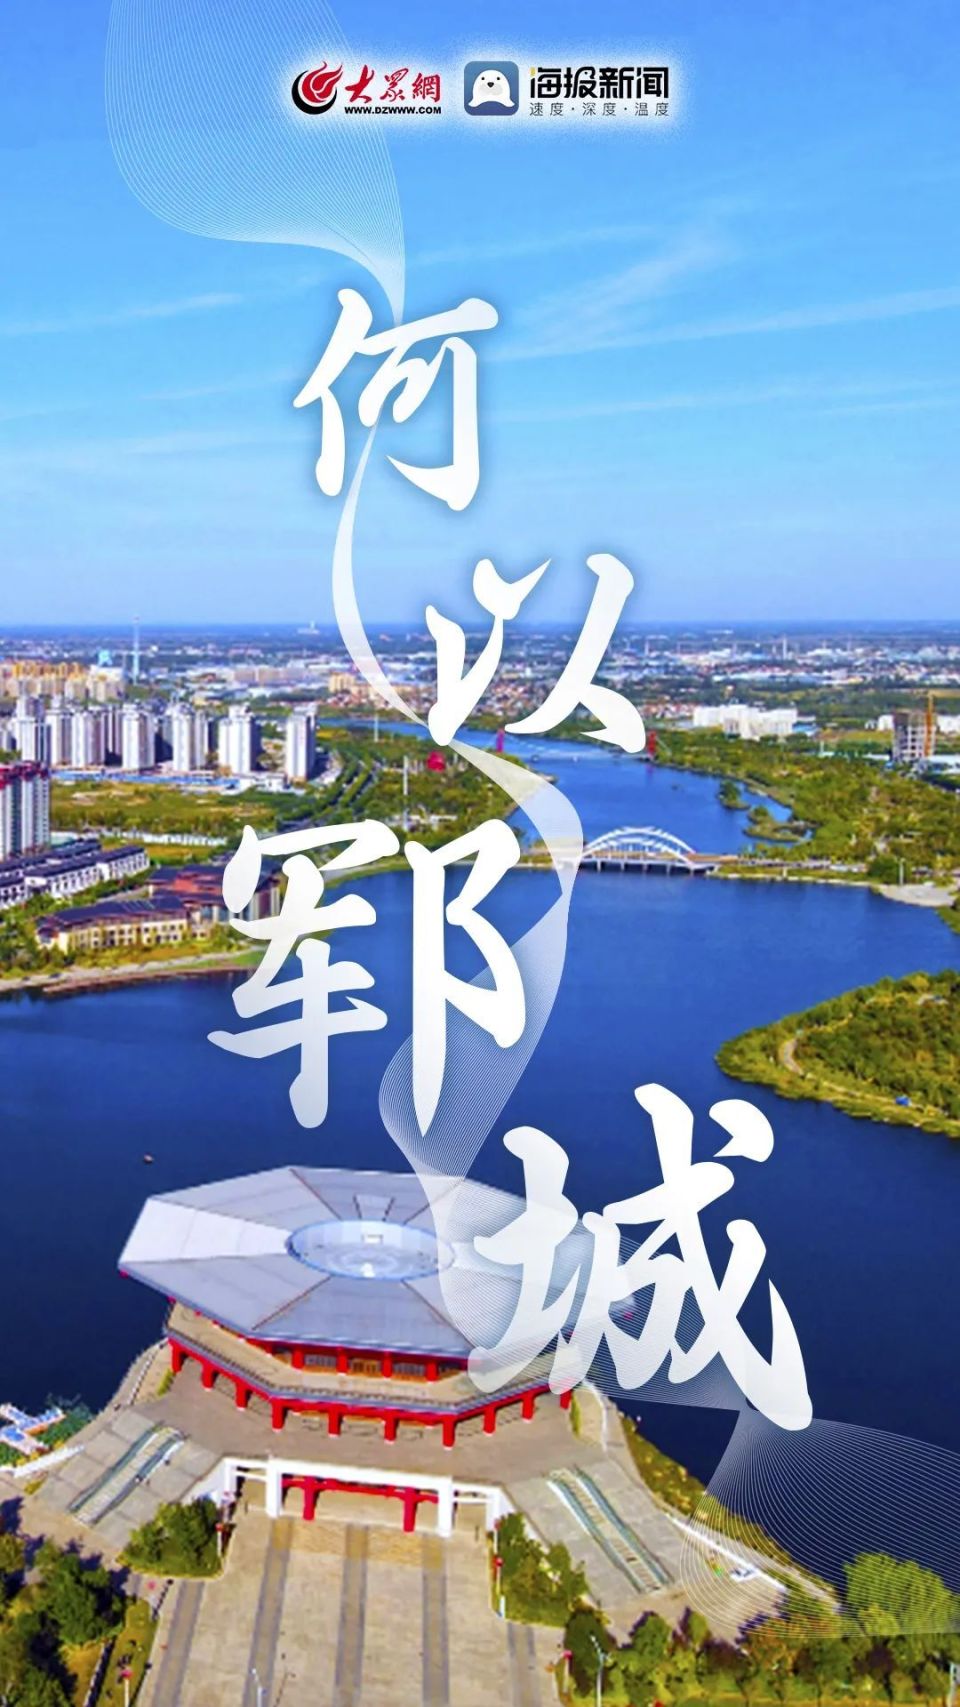 黄河情艺术字体图片